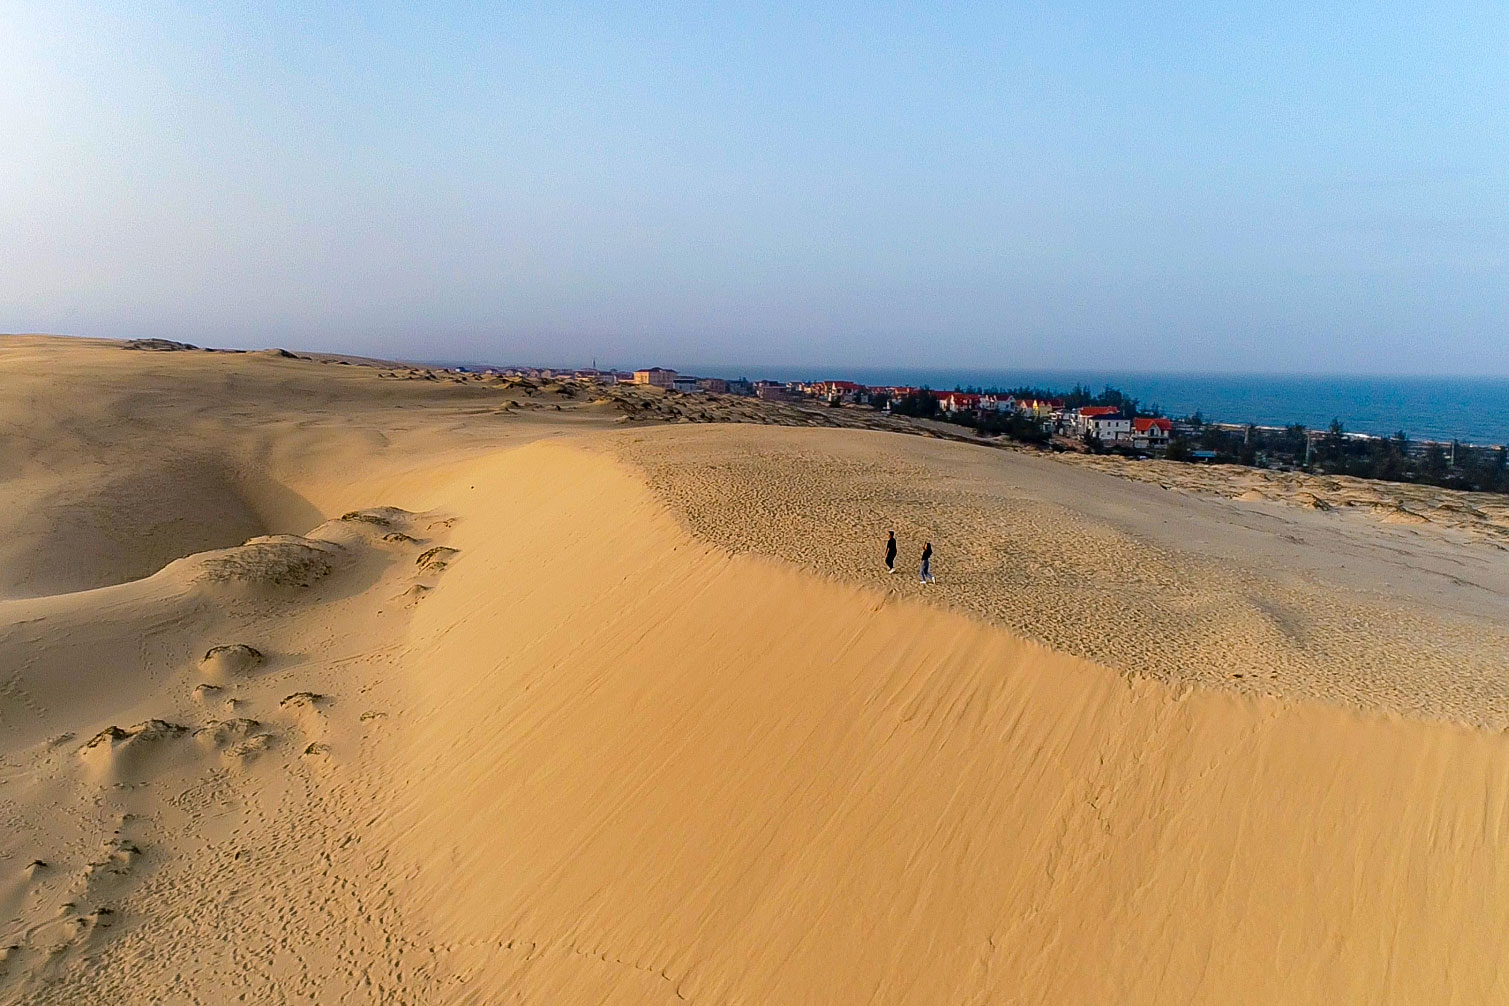 Đồi cát Quang Phú là một trong những đồi cát cao, rộng trùng điệp du khách có thể thử trò trượt cát, đi xe địa hình trên cát